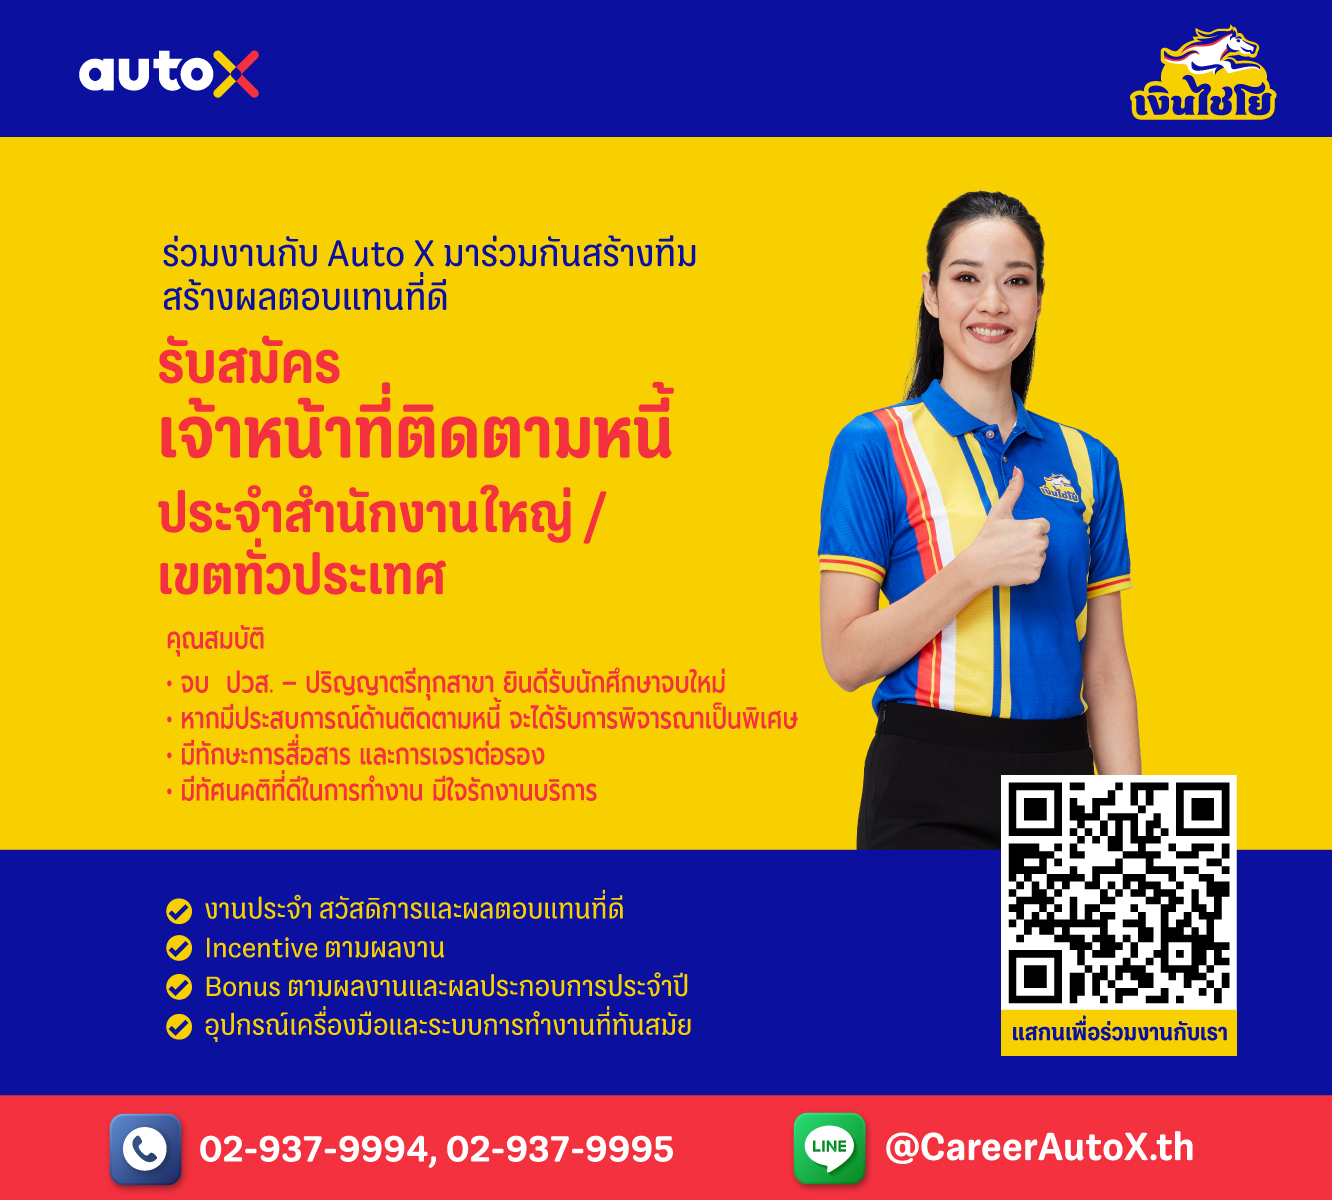 6-AutoX_Career_Collector-1332x1200px.jpg